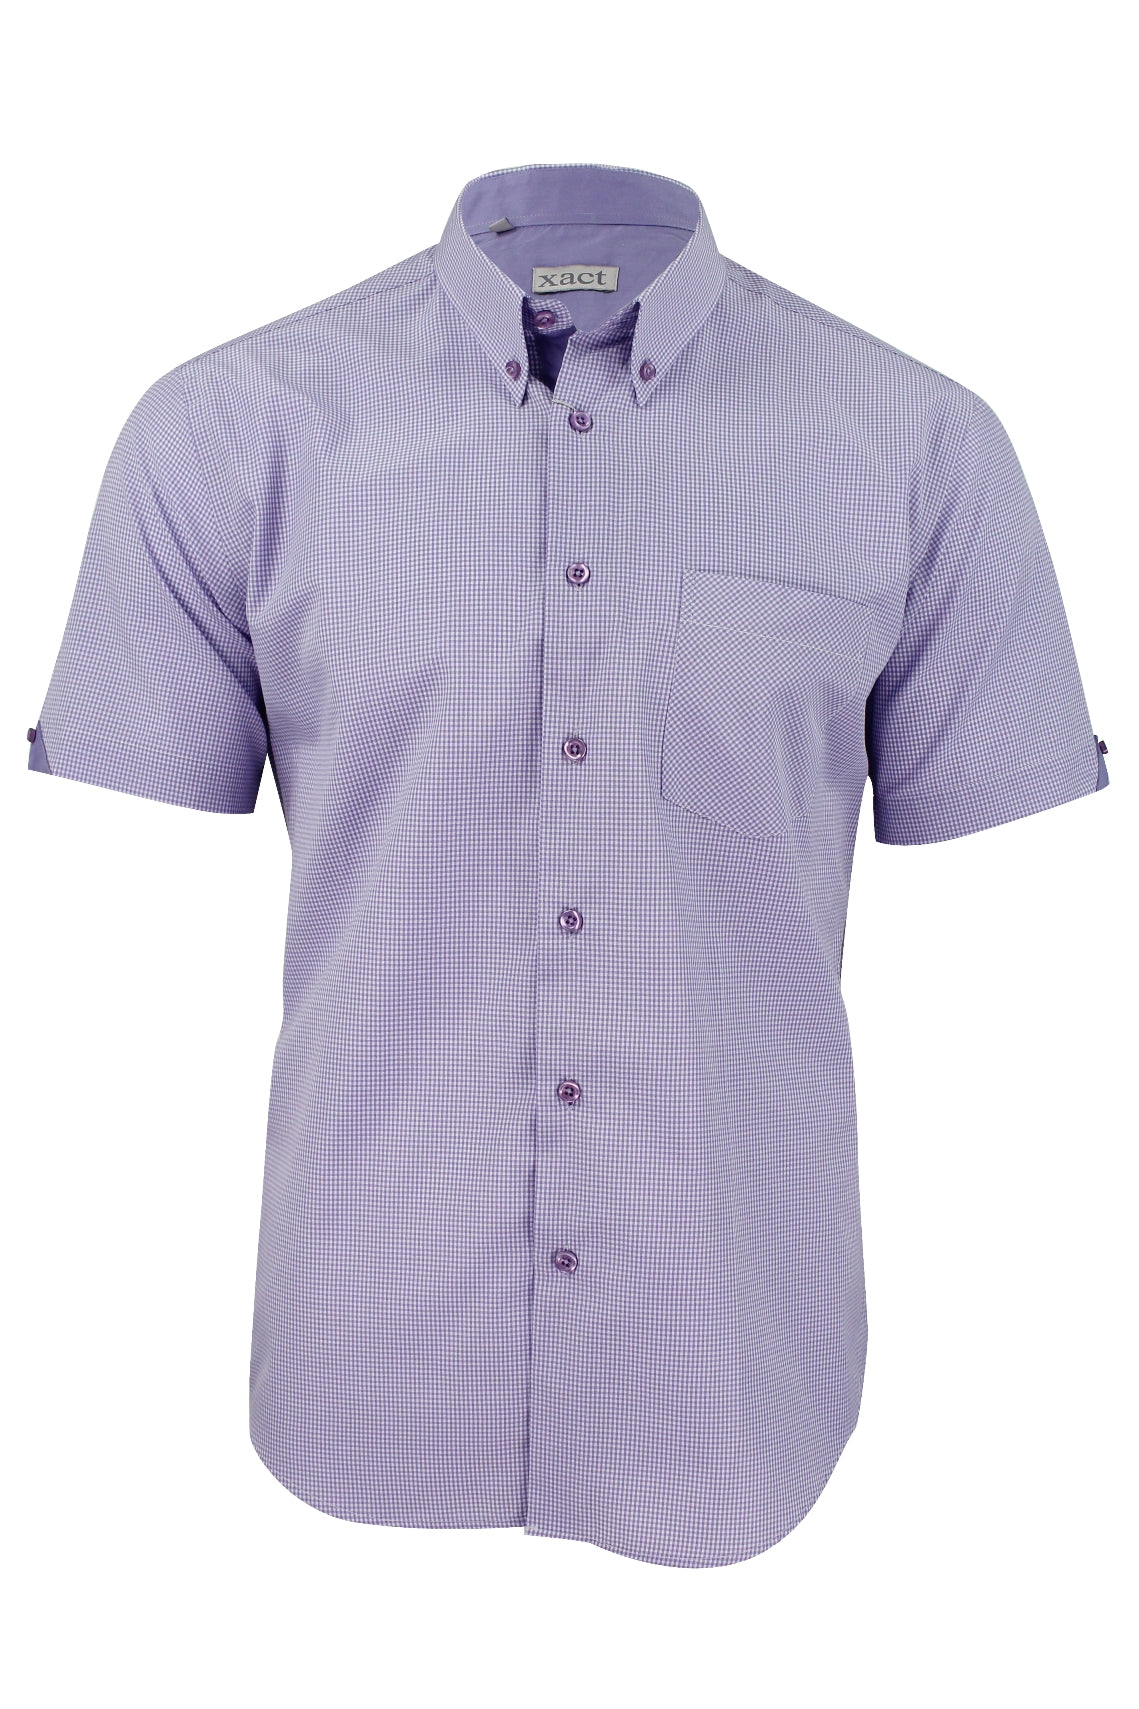 Mens Short Sleeved Shirt by Xact Clothing Micro Gingham Check-Main Image